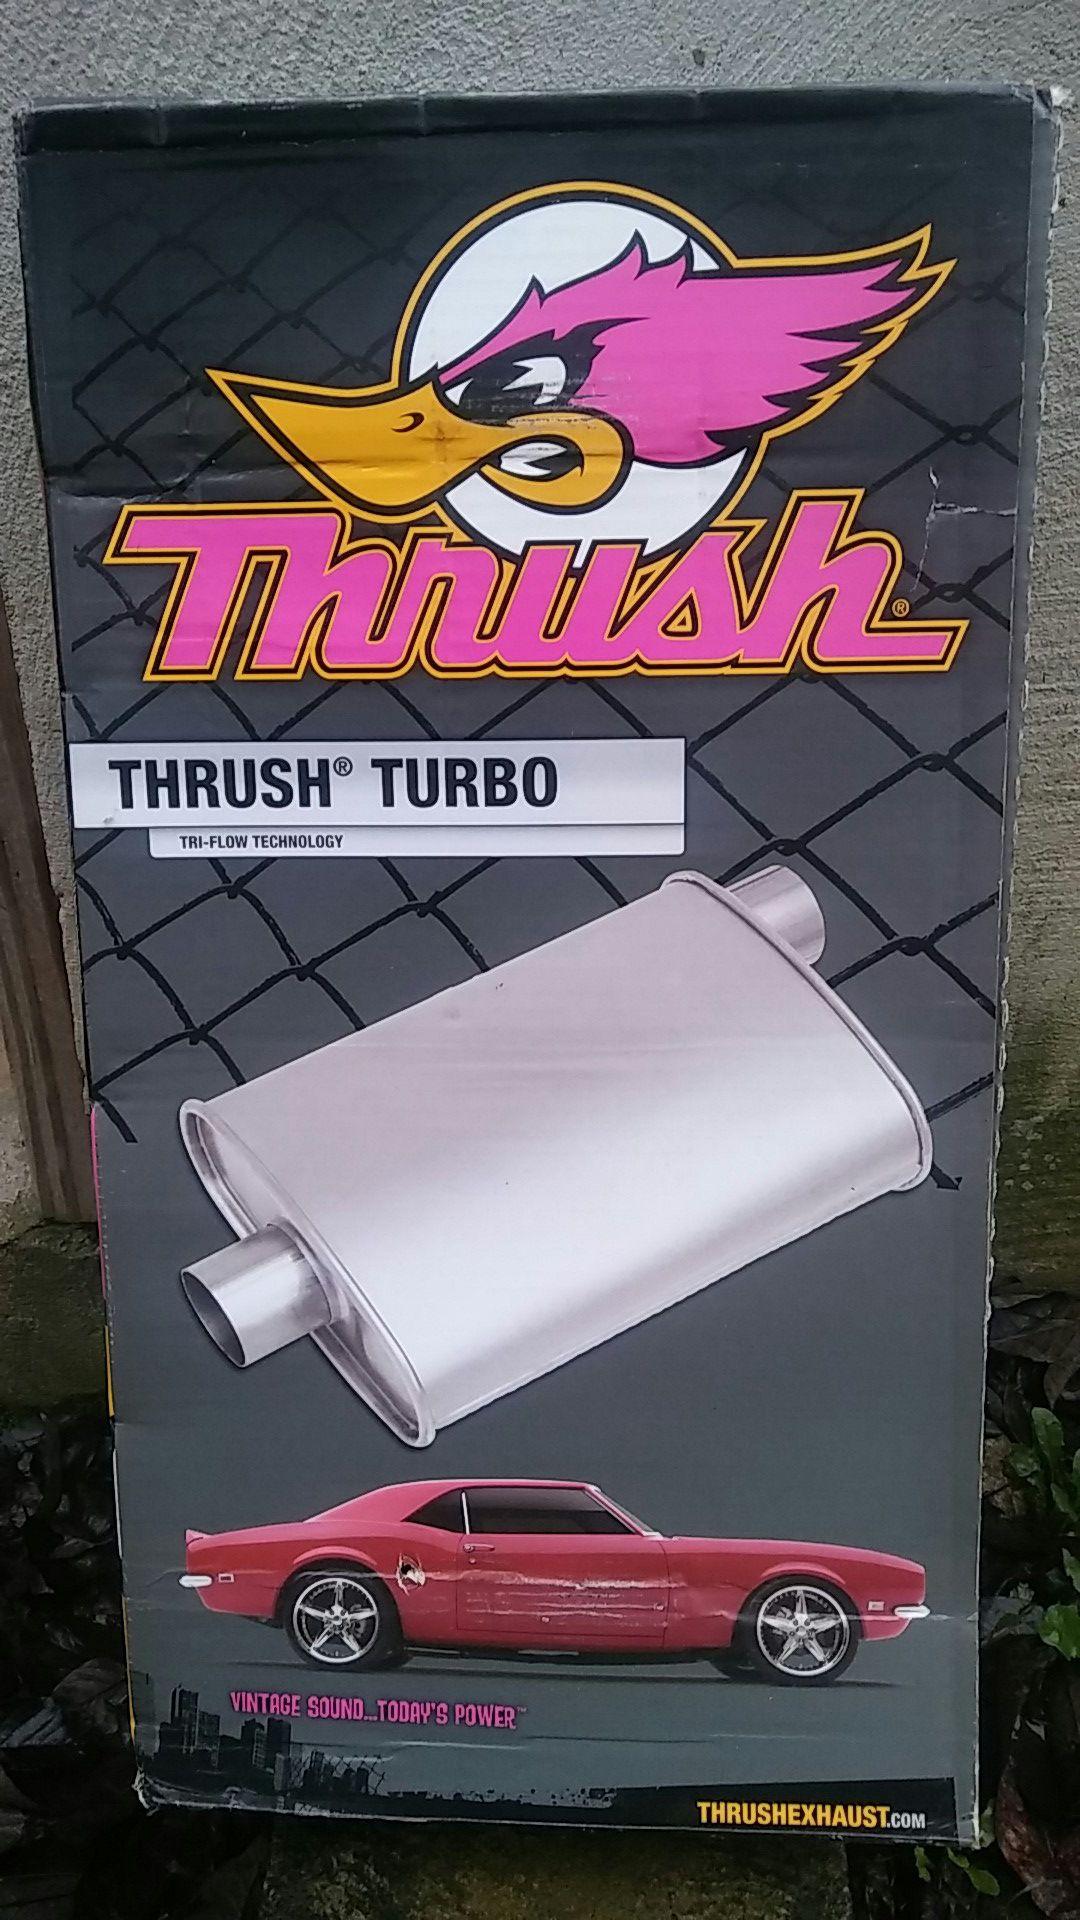 Thrush turbo